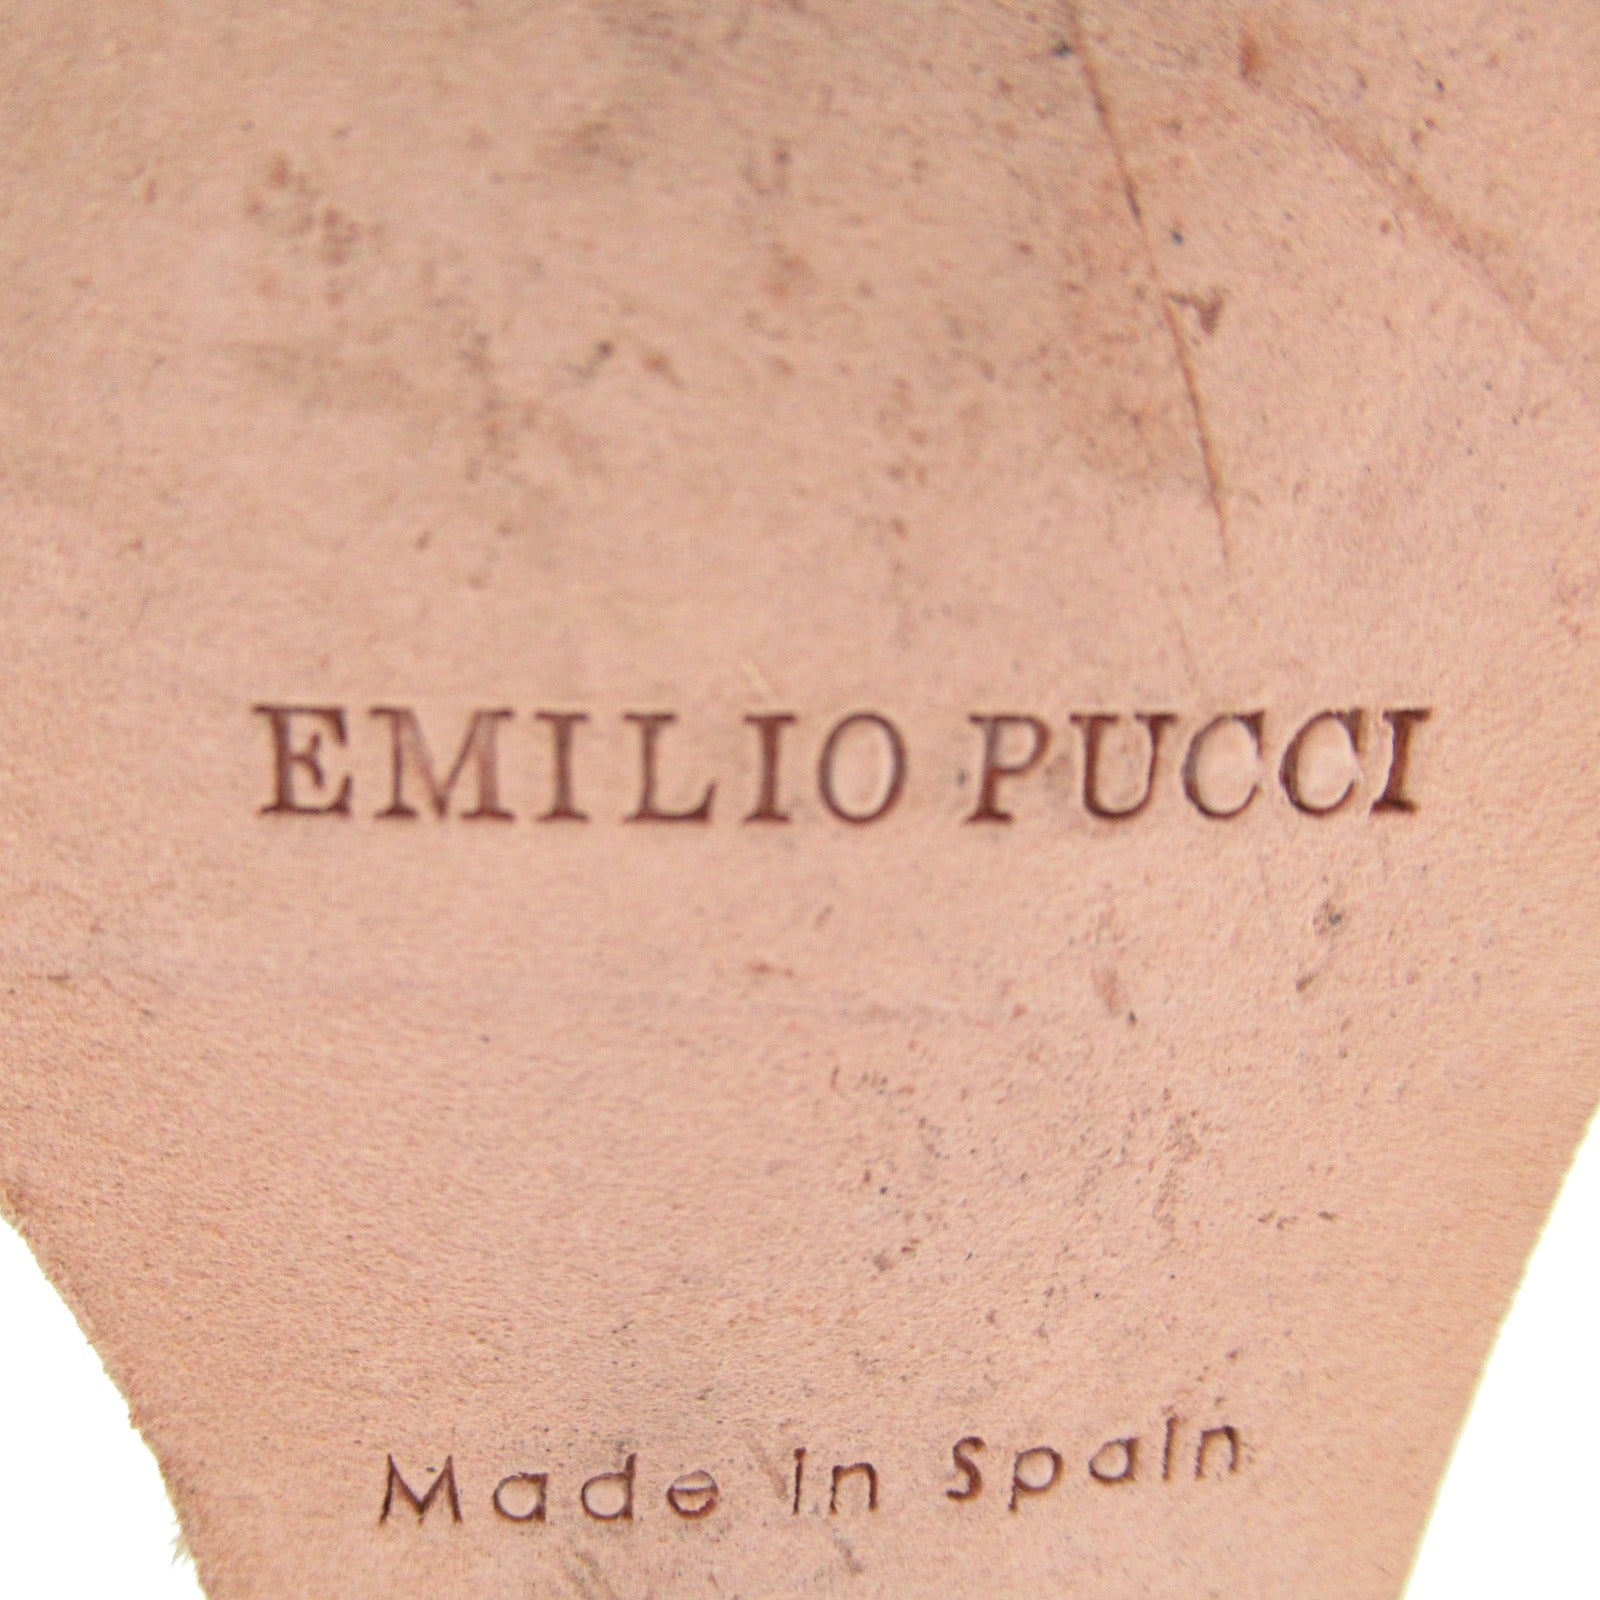 Emilio Pucci Emilio Pucci, Emilio Pucci, Emilio Pucci, Emilio Pucci, Emilio Pucci, Emilio Pucci, Emilio Pucci, Emilio Pucci, Emilio Pucci